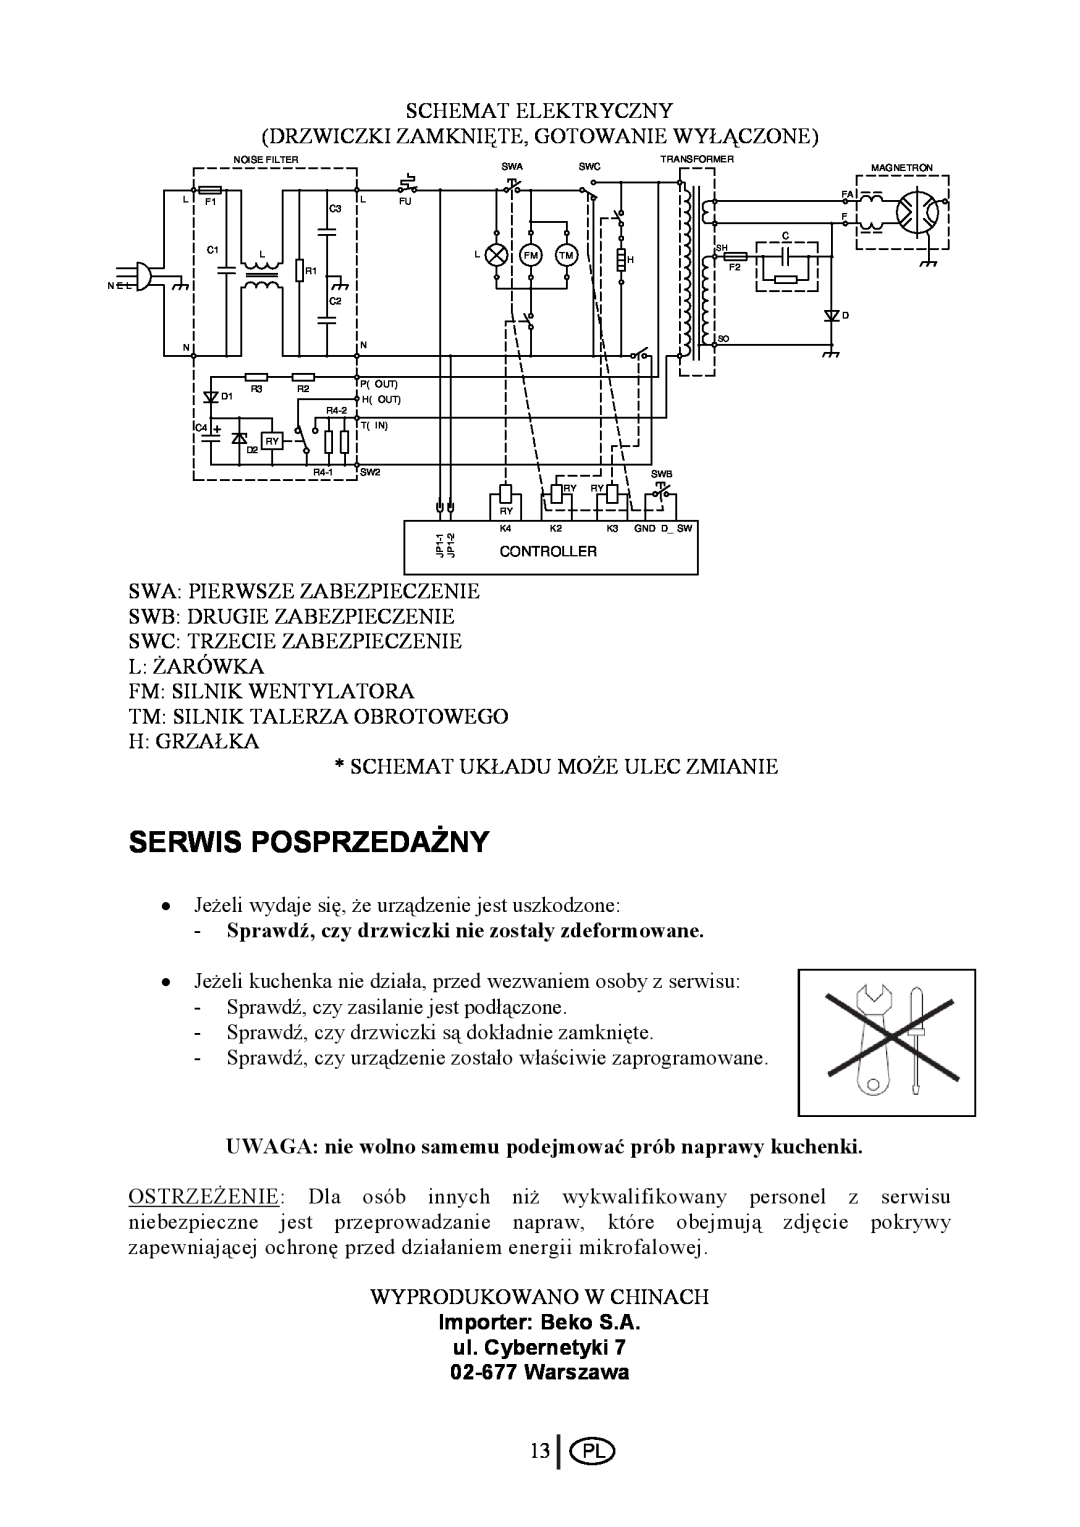 Beko MWB 2510 EX instruction manual Serwis Posprzedażny, Sprawdź, czy drzwiczki nie zostały zdeformowane 